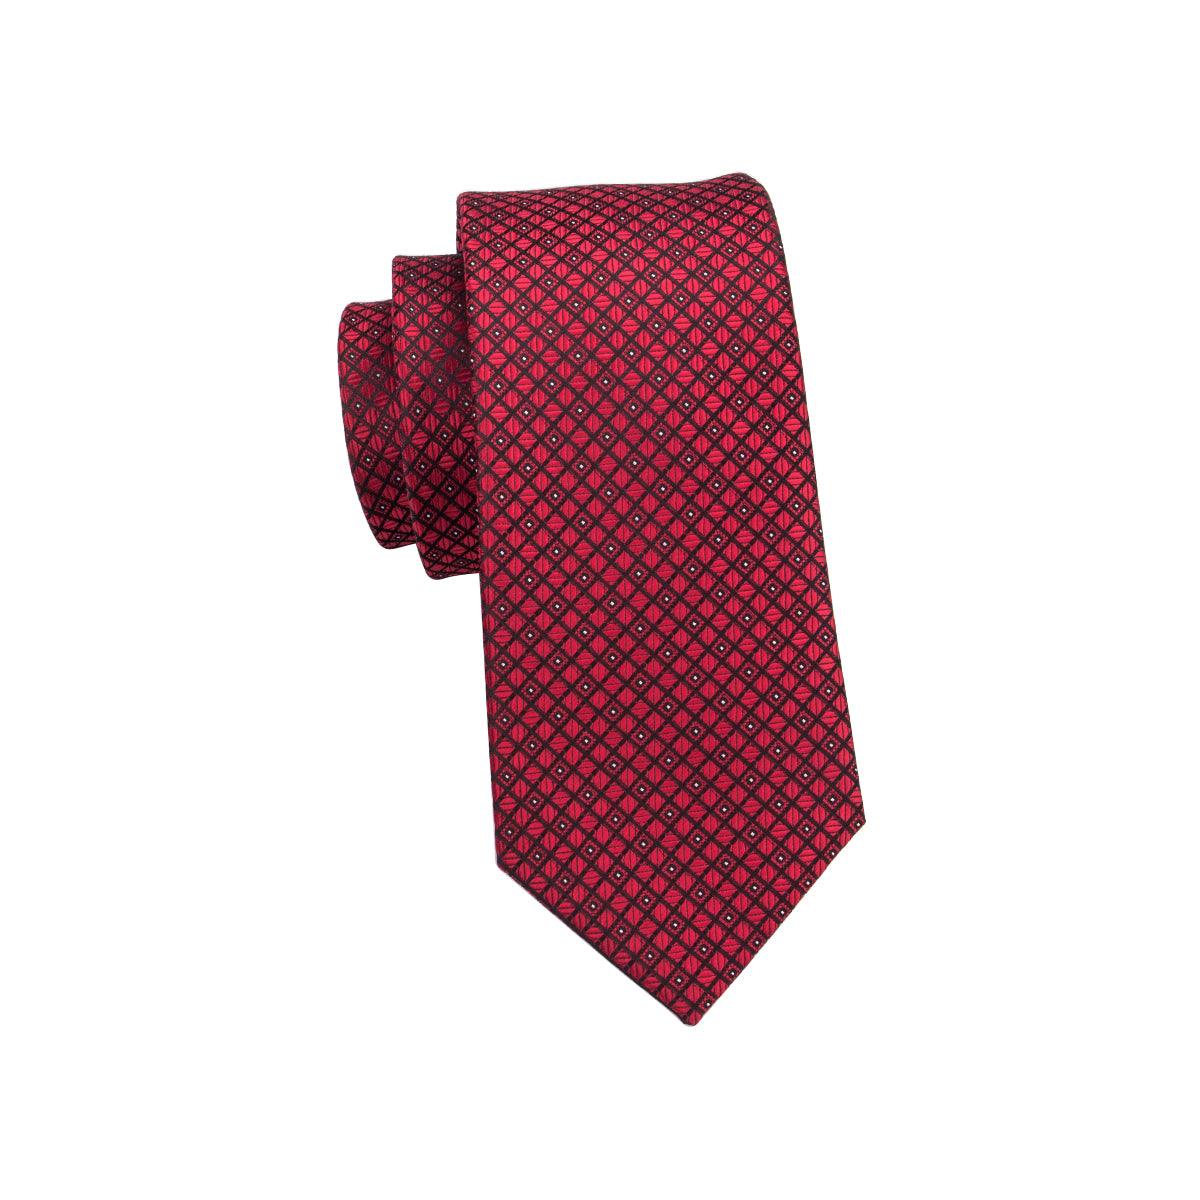 Red Burgundy Plaid Silk Tie Pocket Square Cufflink Set - STYLETIE